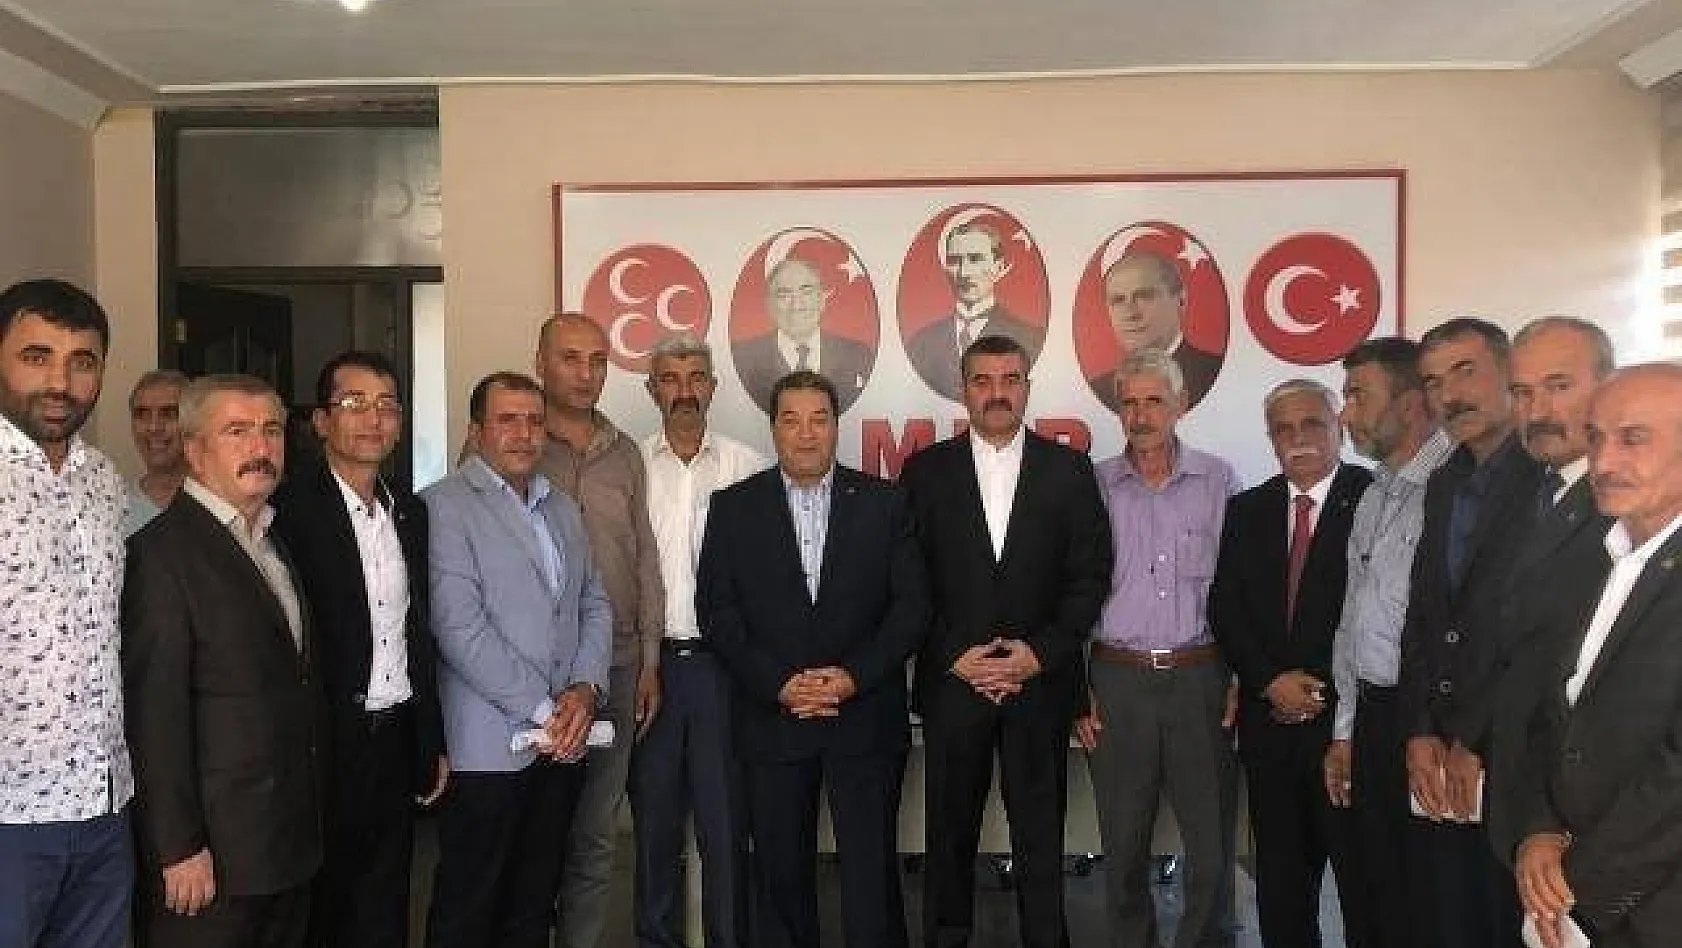 İlçe Başkanlarından Avşar'a destek açıklaması 